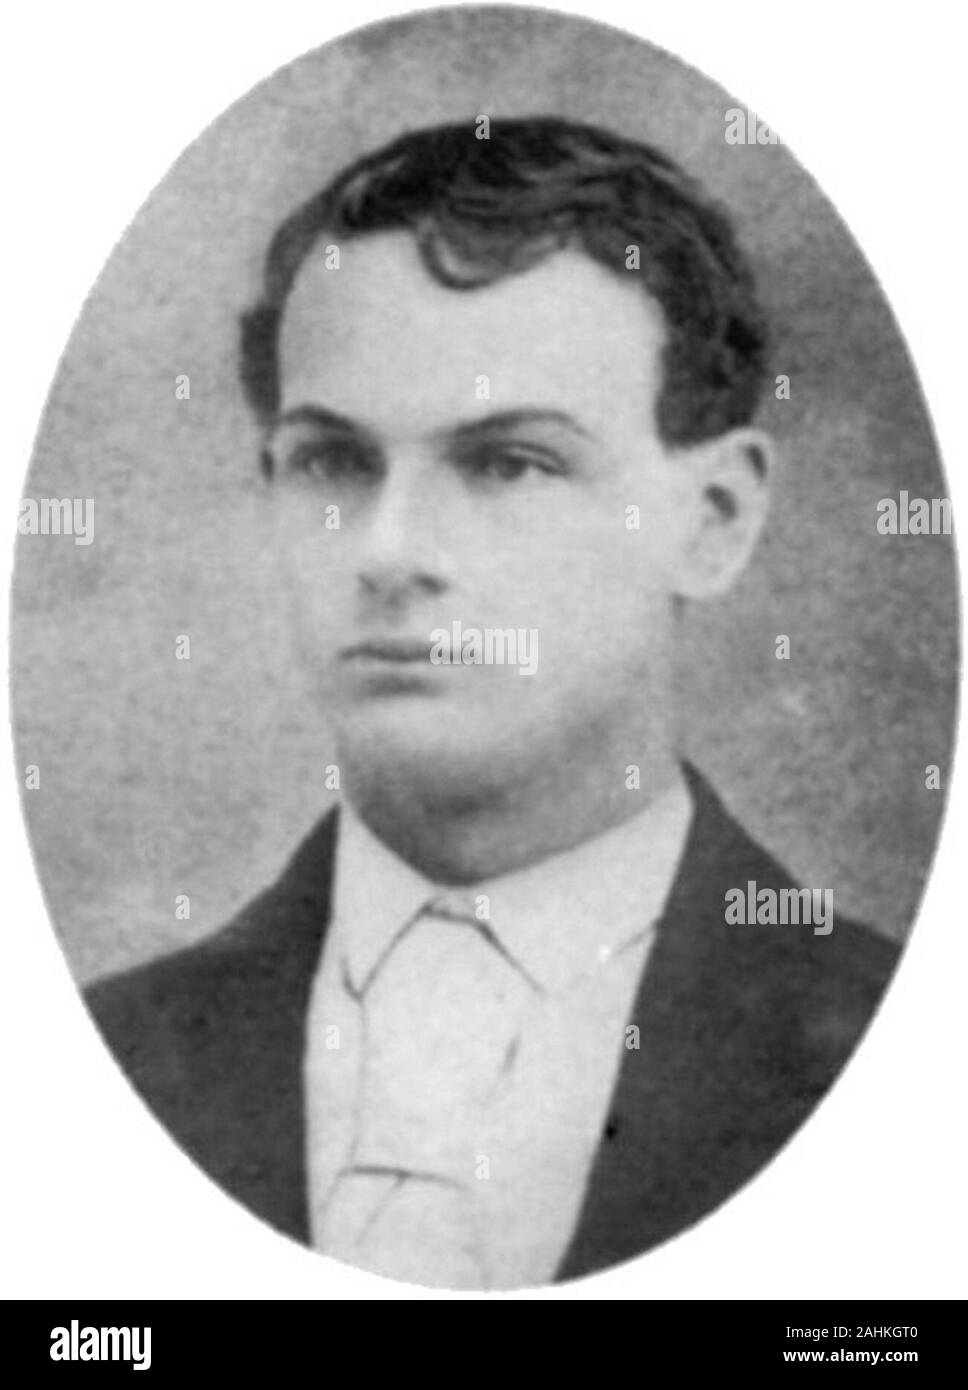 John Harrison giovane (1851 - 1874) American fuorilegge, il fratello di Cole, Jim Bob e. Egli è stato brevemente un membro del James-Giovani Gang, una banda di fuorilegge che comprendeva anche il famigerato Jesse James. Foto Stock